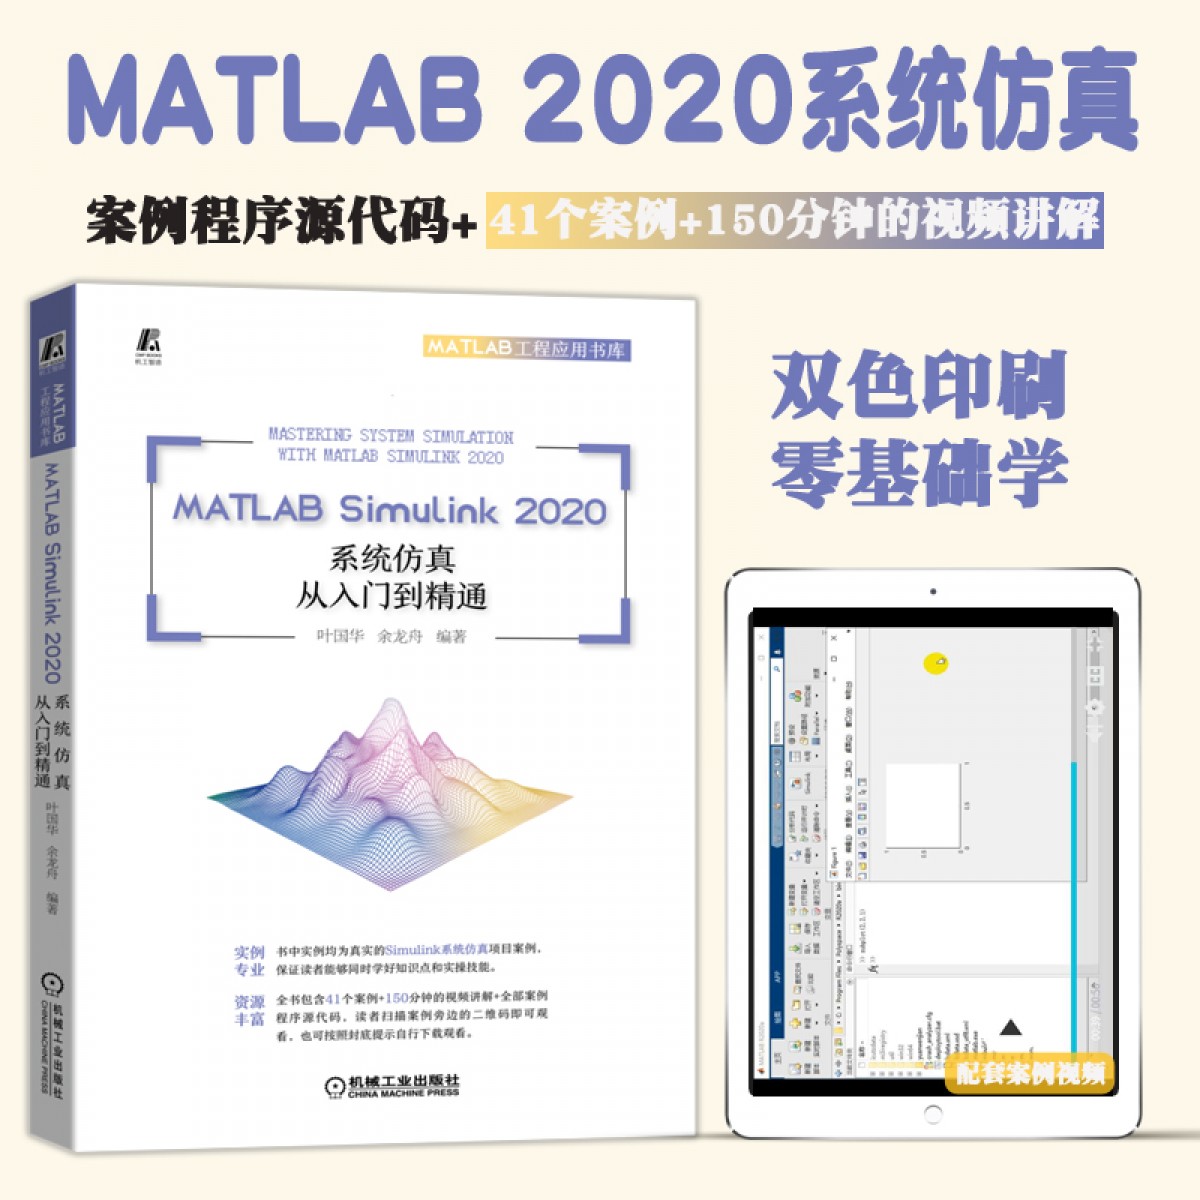 2021新书 MATLAB Simulink 2020系统仿真从入门到精通 叶国华MATLAB 视频教程 素材文件 系统仿真 新版 软件安装操作视频教程书籍【MATLAB2020】系统仿真教程当前正在查看的商品